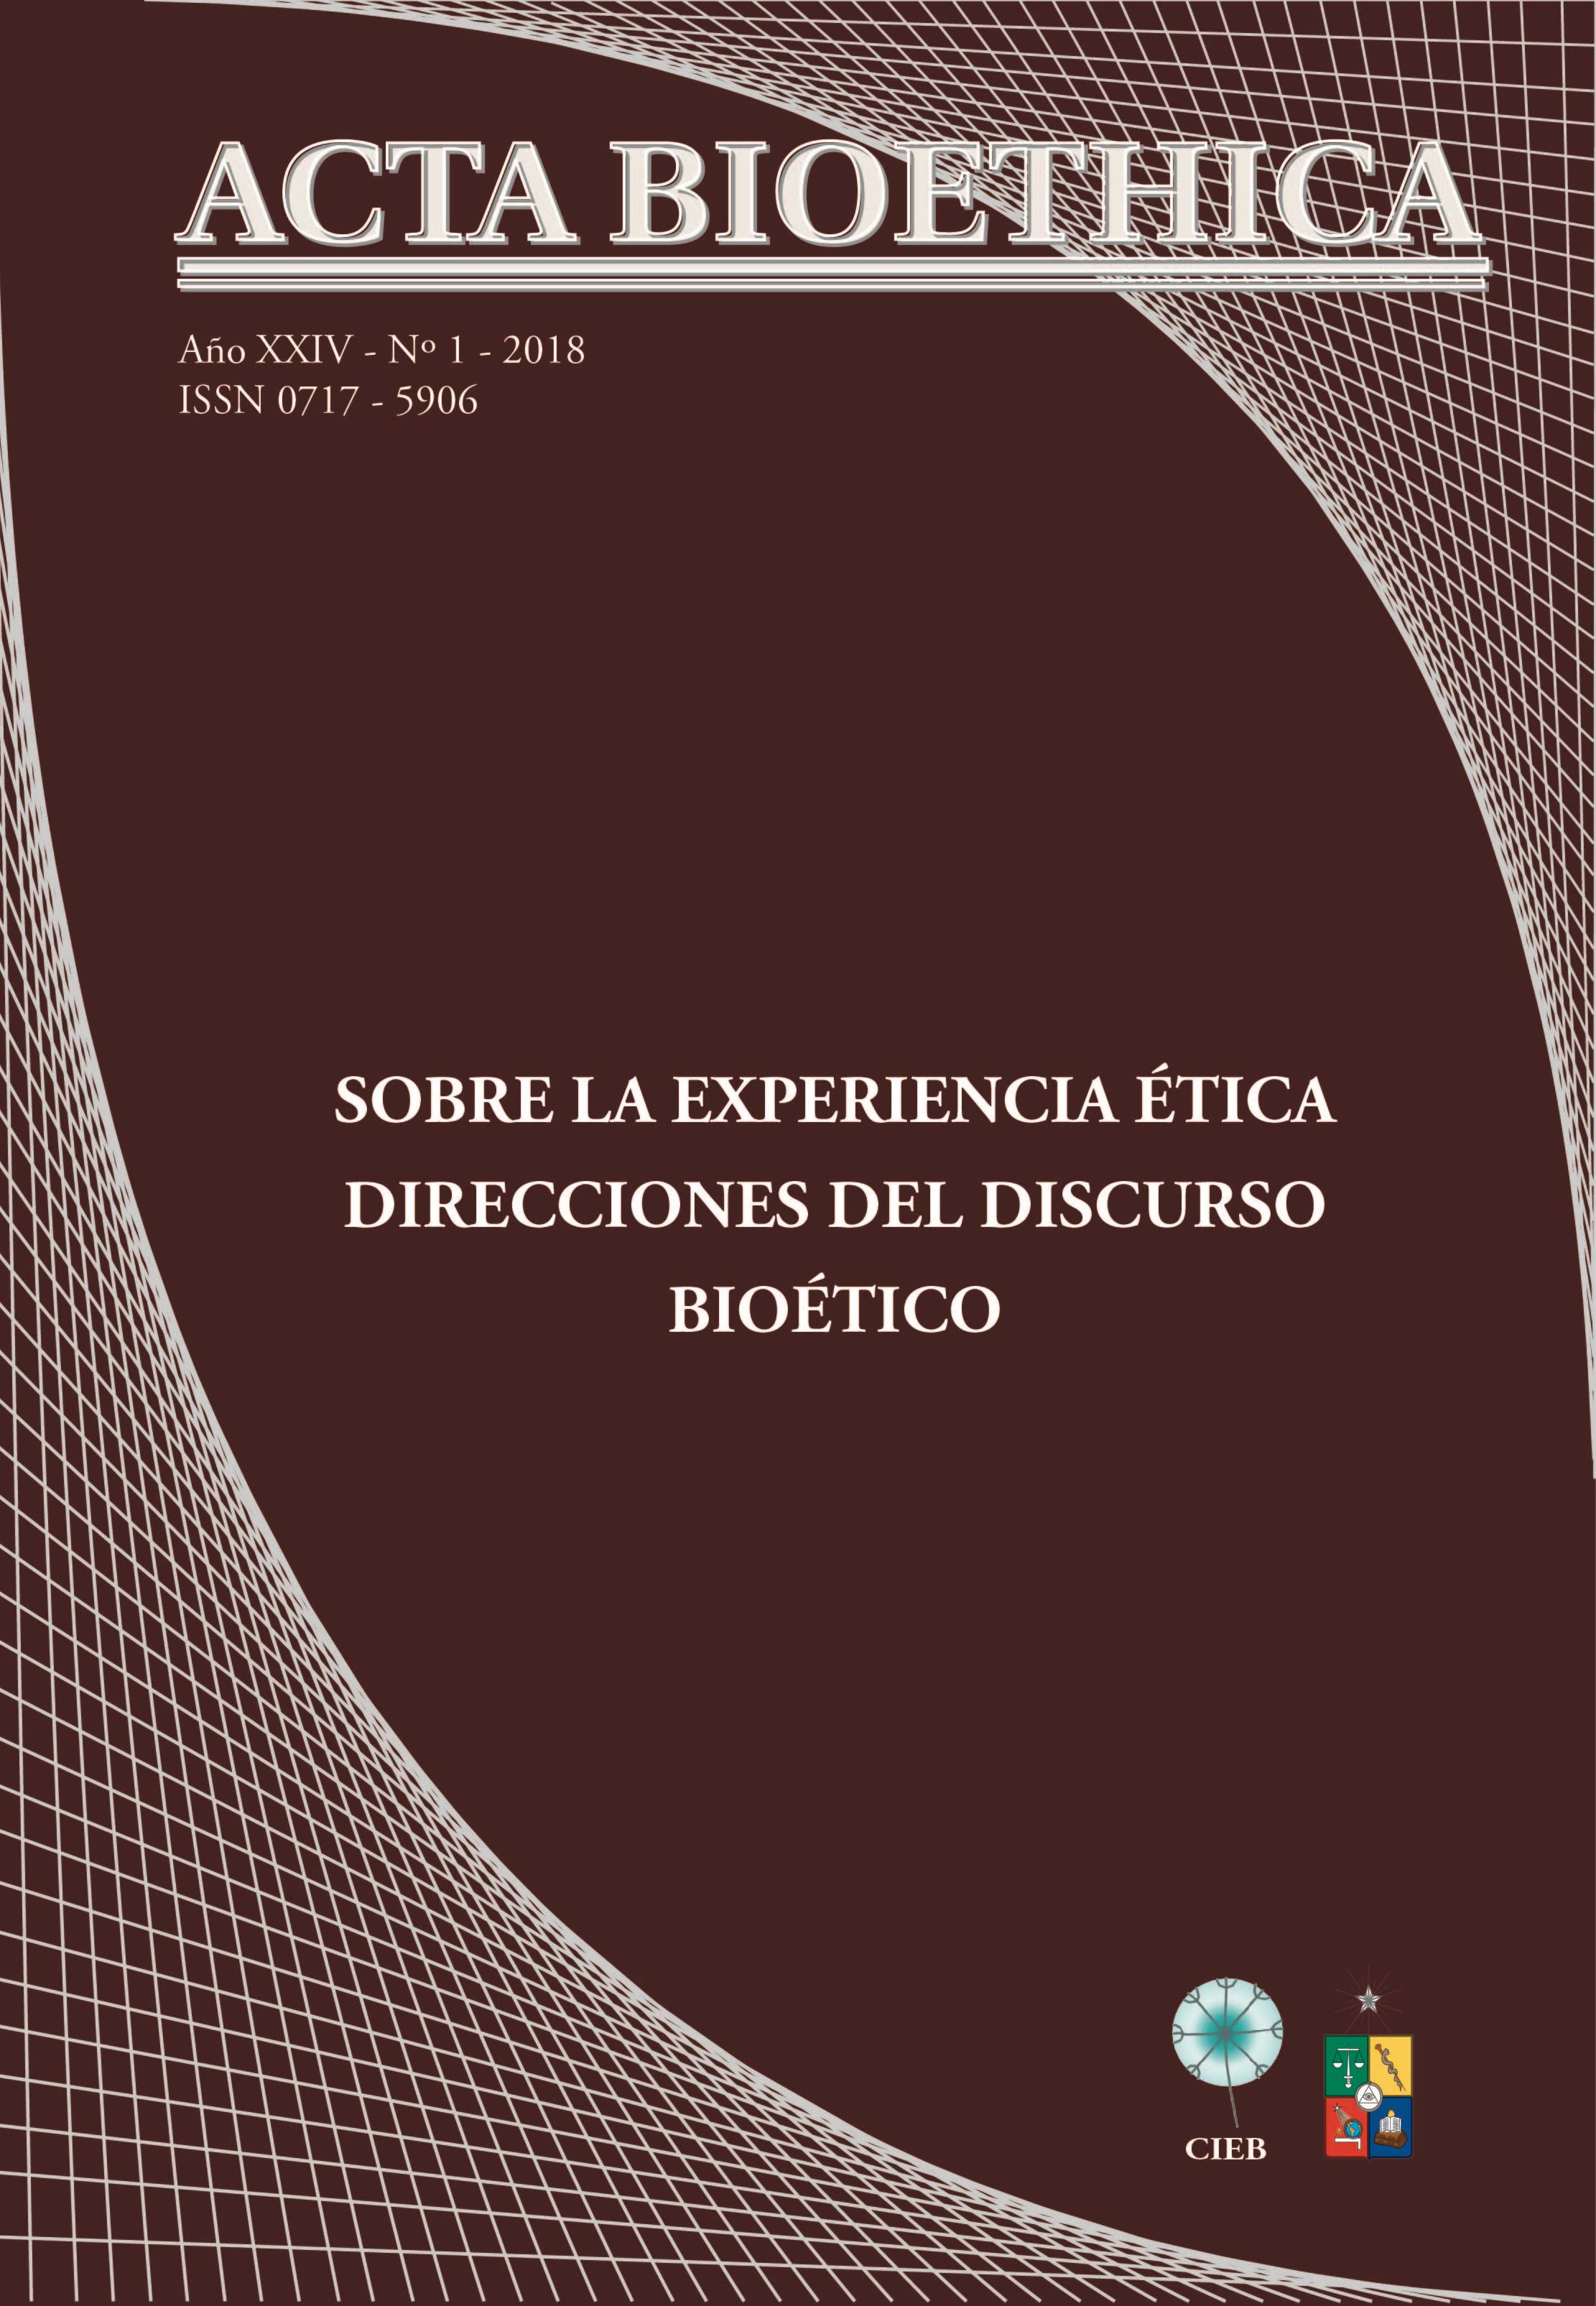 							Ver Vol. 24 Núm. 1 (2018): Sobre la experiencia ética. Direcciones del discurso bioético
						